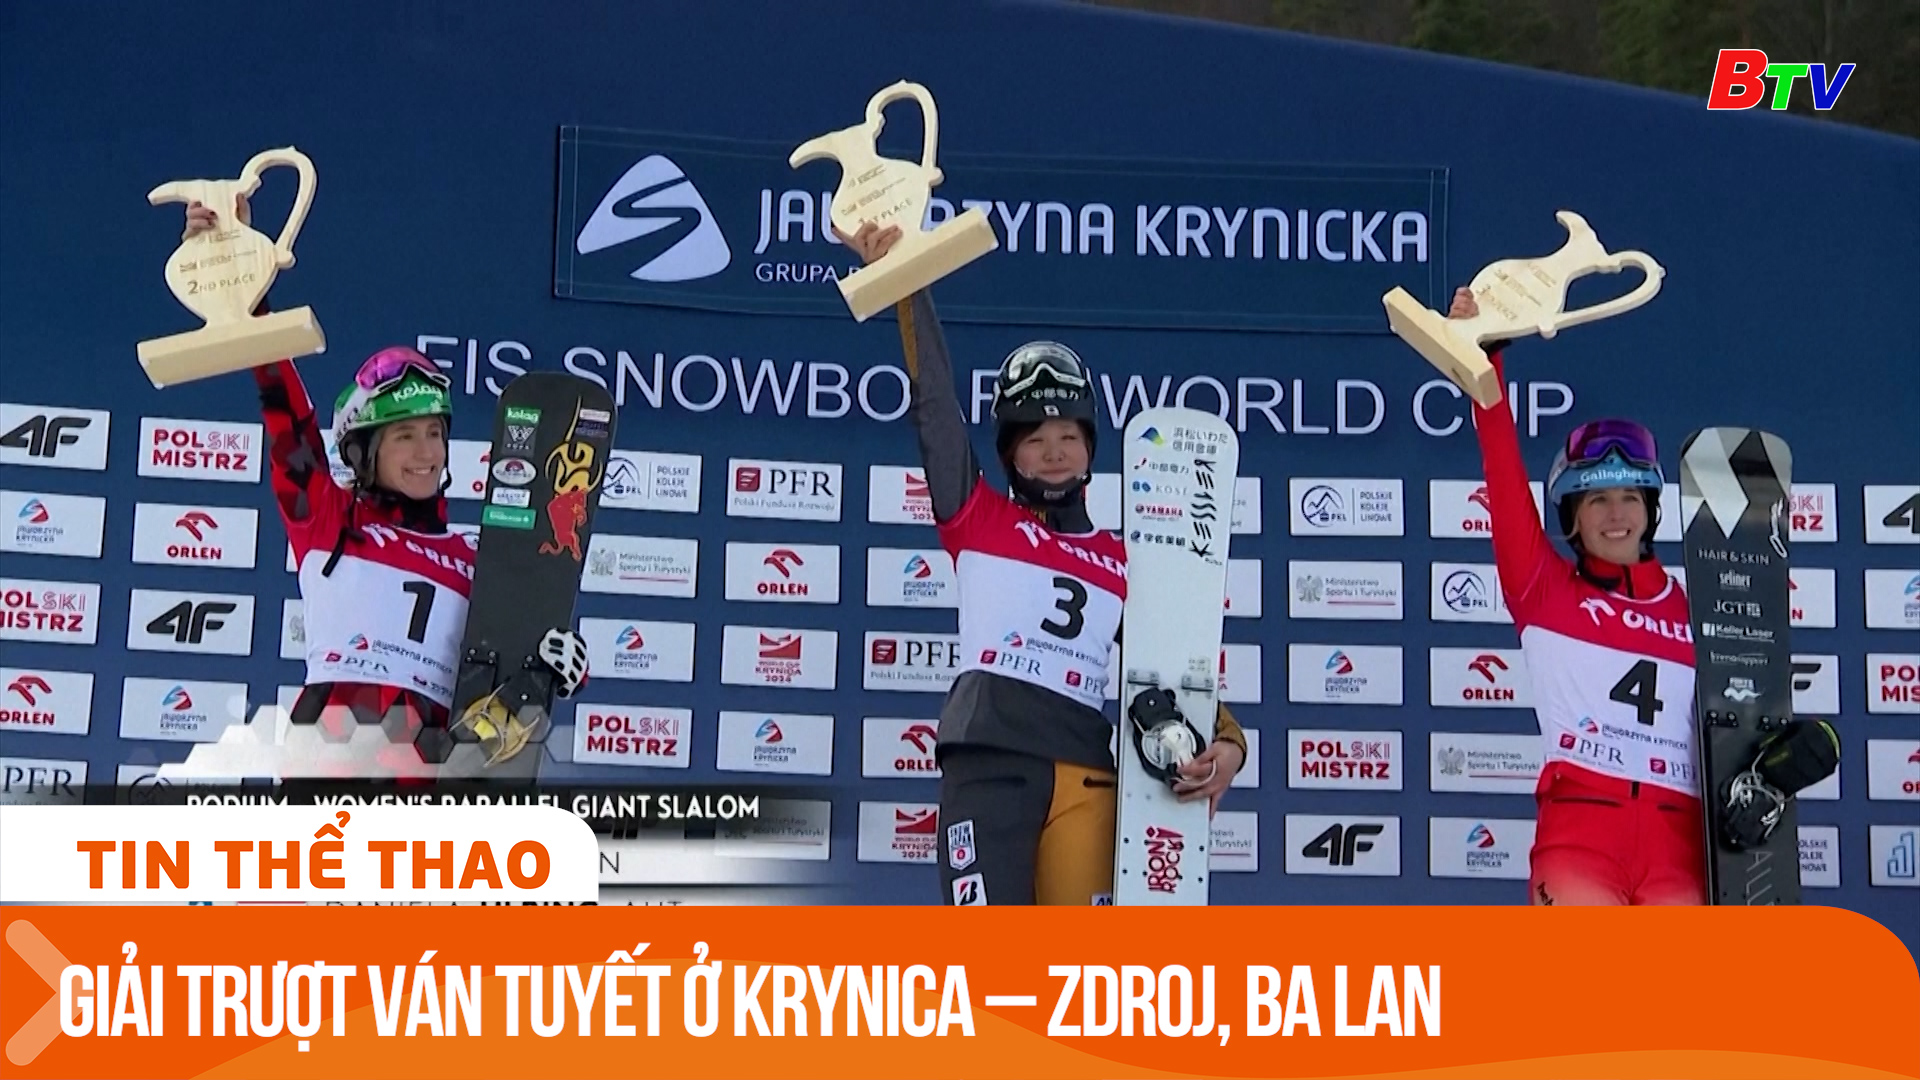 Giải trượt ván tuyết ở Krynica – Zdroj, Ba Lan | Tin Thể thao 24h